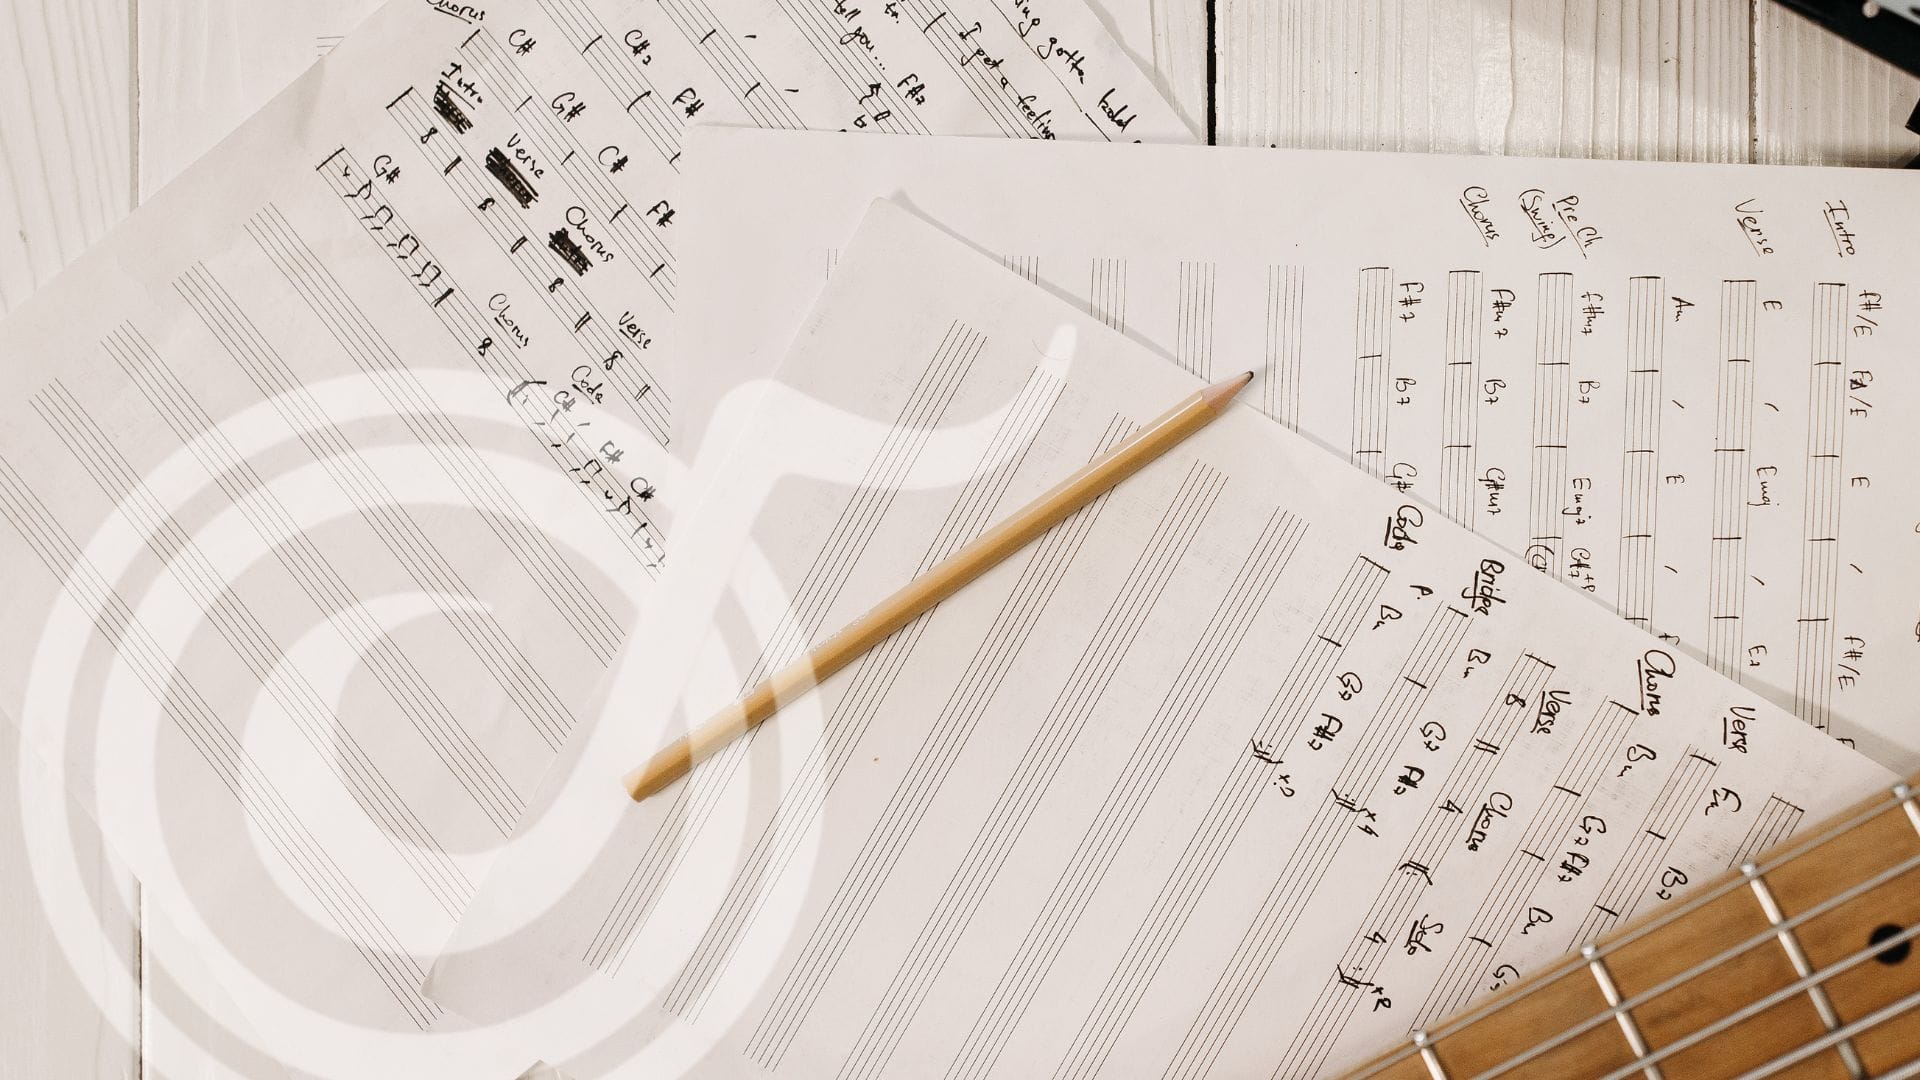 Cifras Musicais: a solução que resolveu um dos problemas para a notação  musical, mas gerou outros! - JAM Music Escola de Música